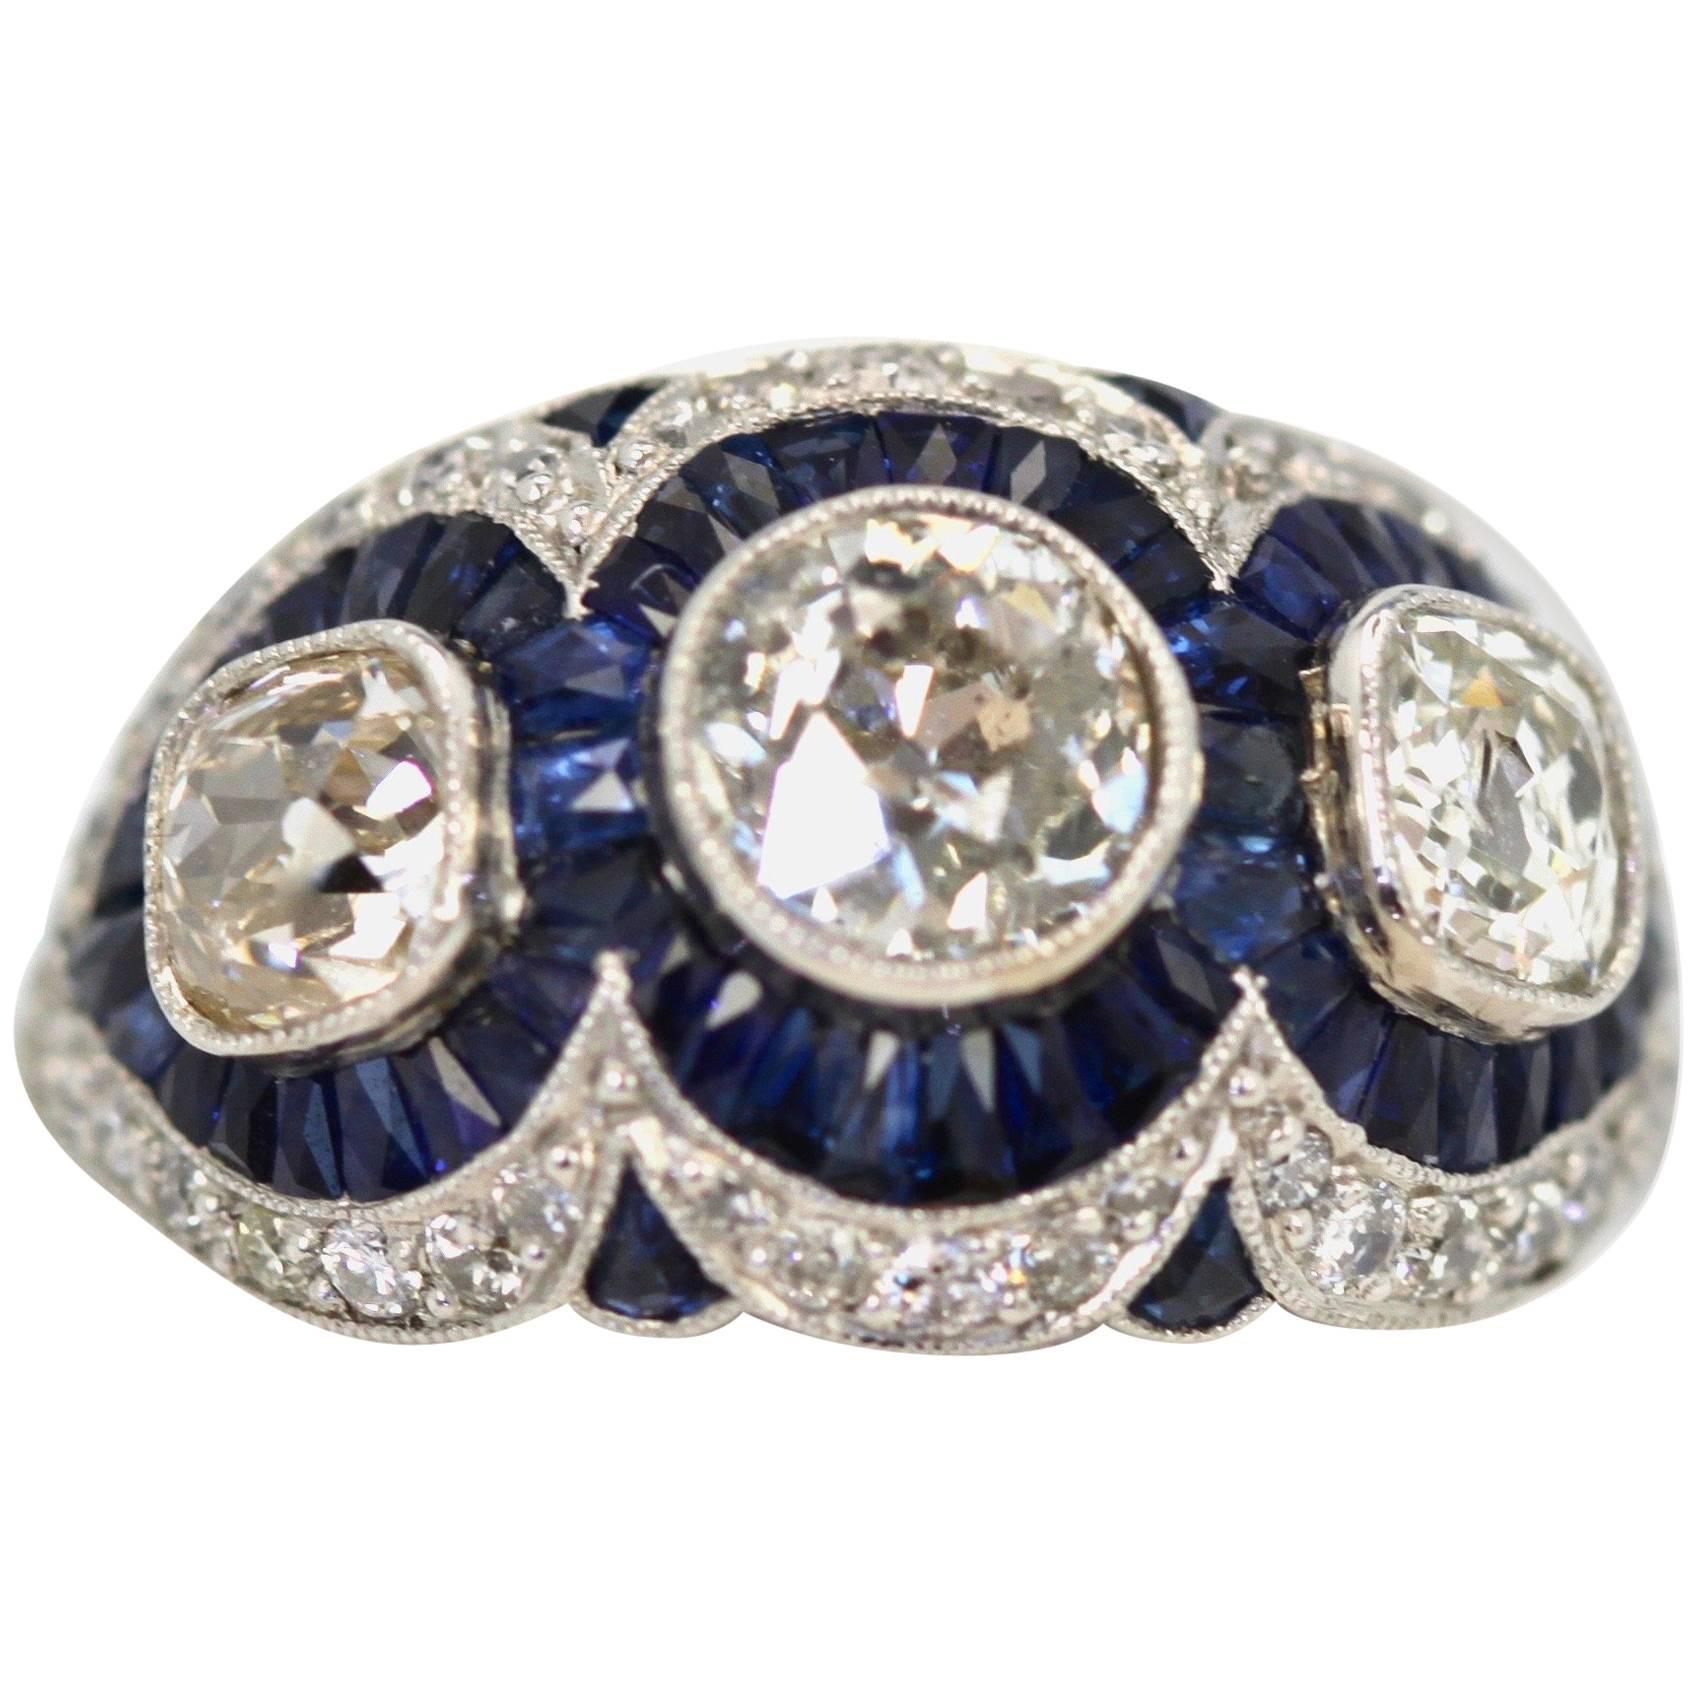  Sapphire Diamond Ring 3.28 Carat